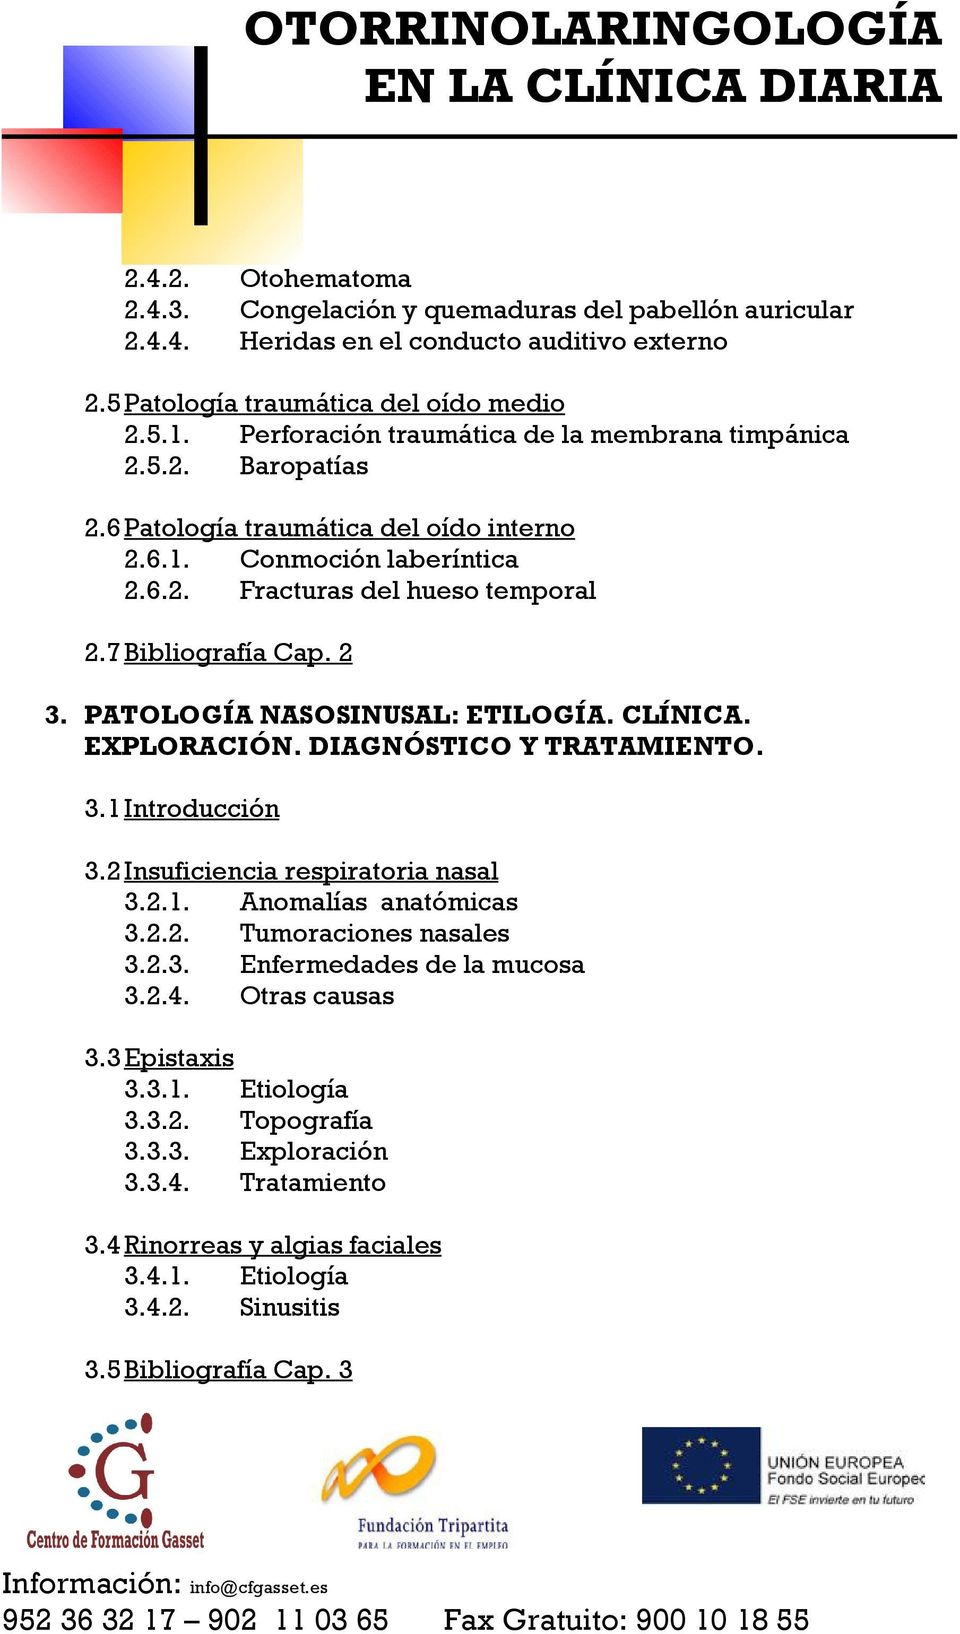 2 3. PATOLOGÍA NASOSINUSAL: ETILOGÍA. CLÍNICA. EXPLORACIÓN. DIAGNÓSTICO Y TRATAMIENTO. 3.1 Introducción 3.2 Insuficiencia respiratoria nasal 3.2.1. Anomalías anatómicas 3.2.2. Tumoraciones nasales 3.